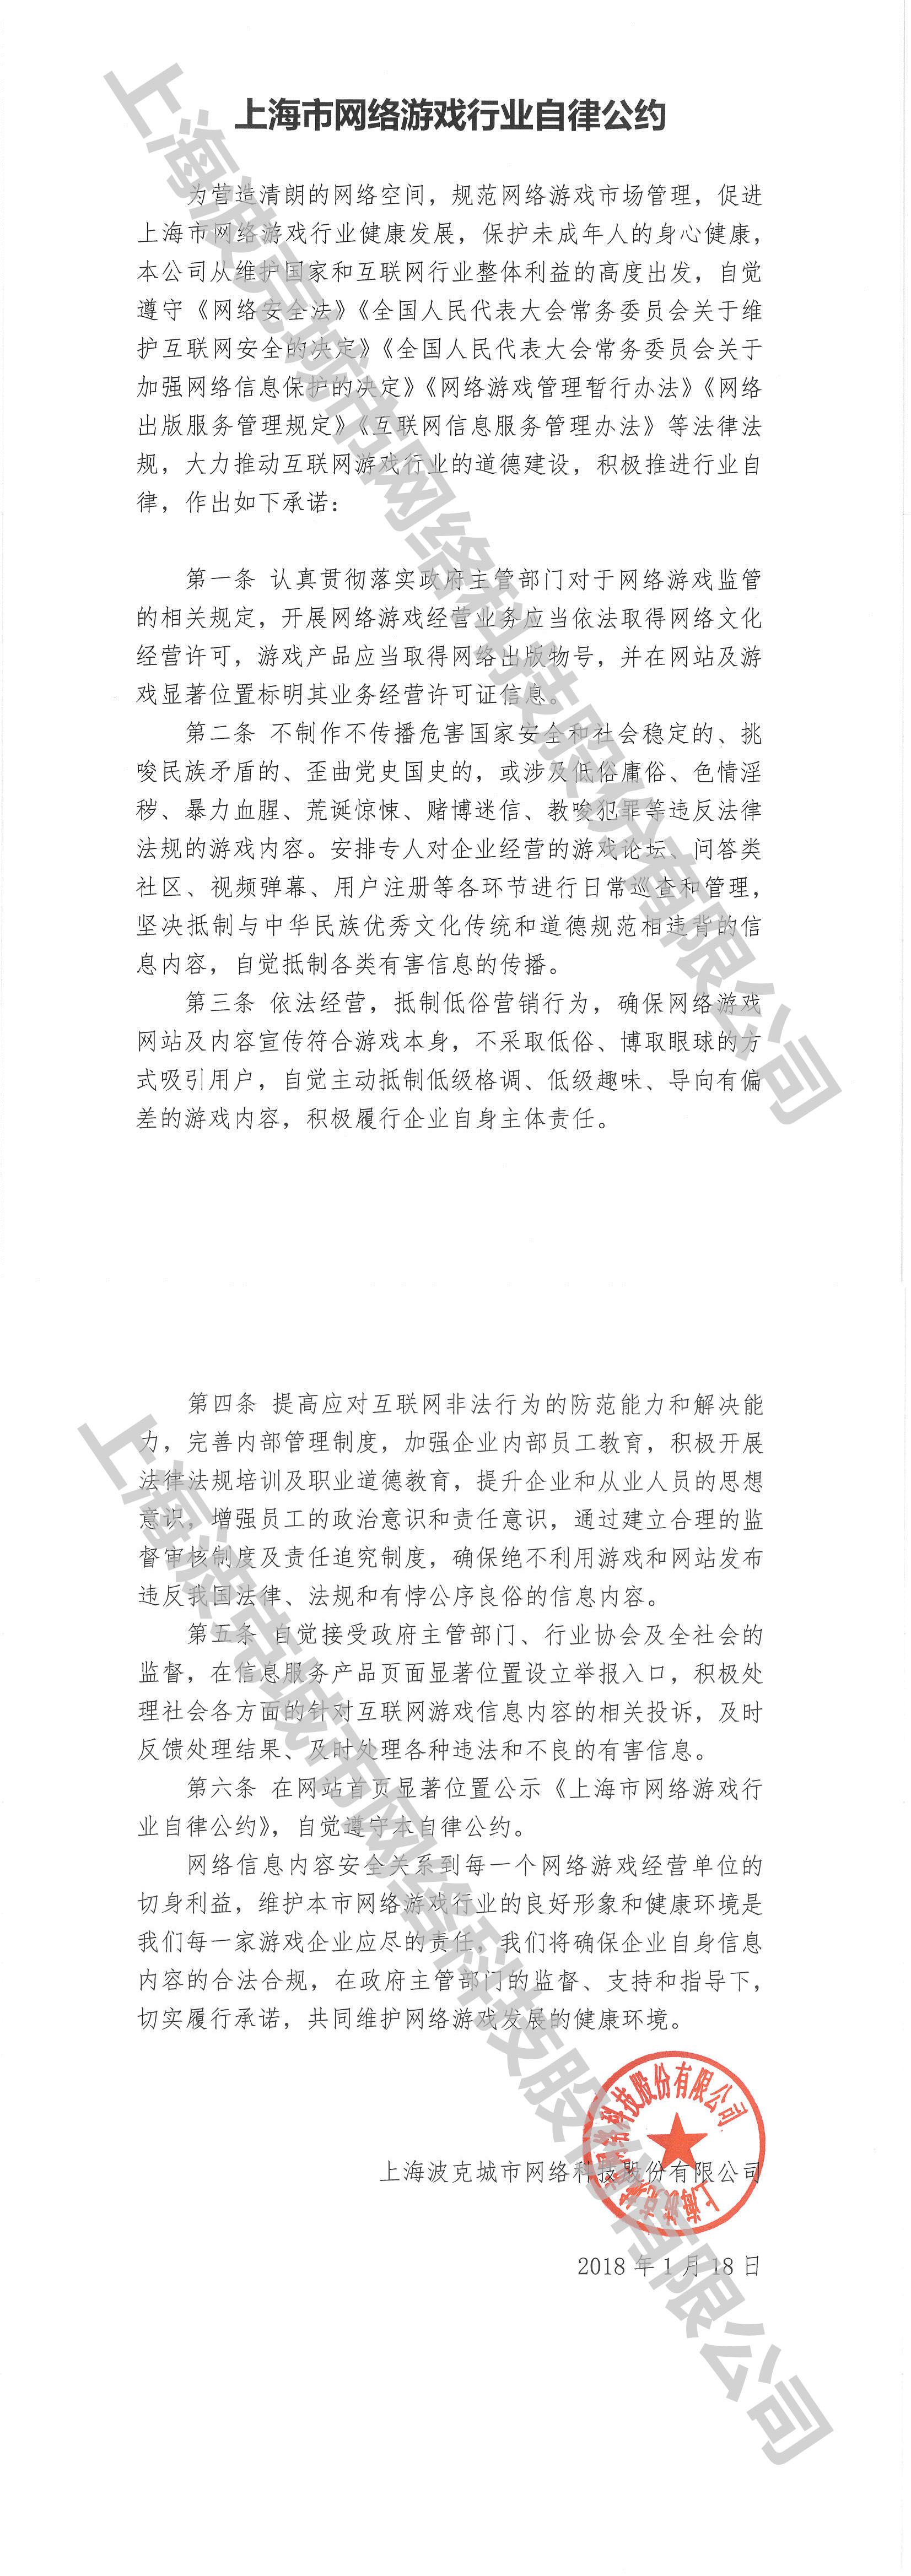 上海市网络游戏自律公约